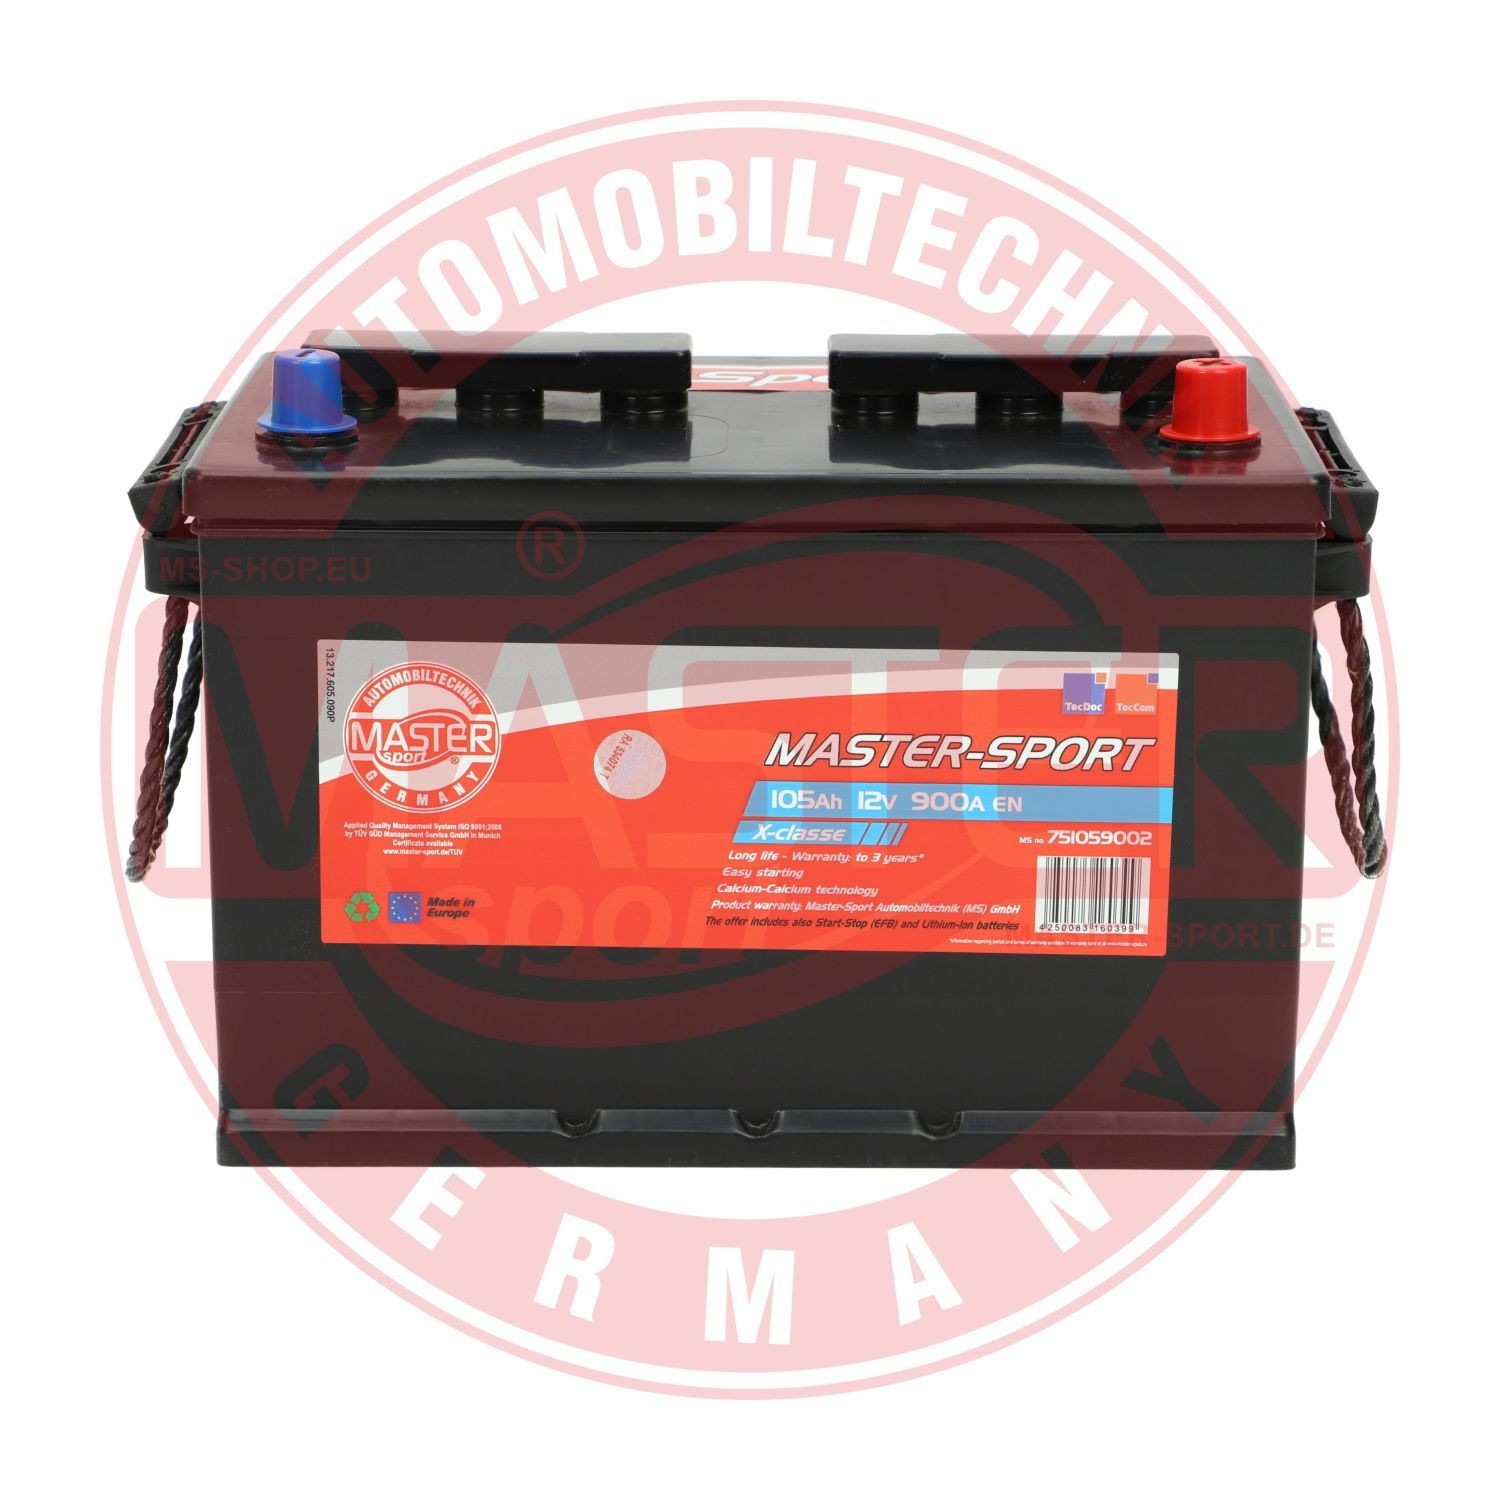 751059002 MASTER-SPORT Batterie für MULTICAR online bestellen